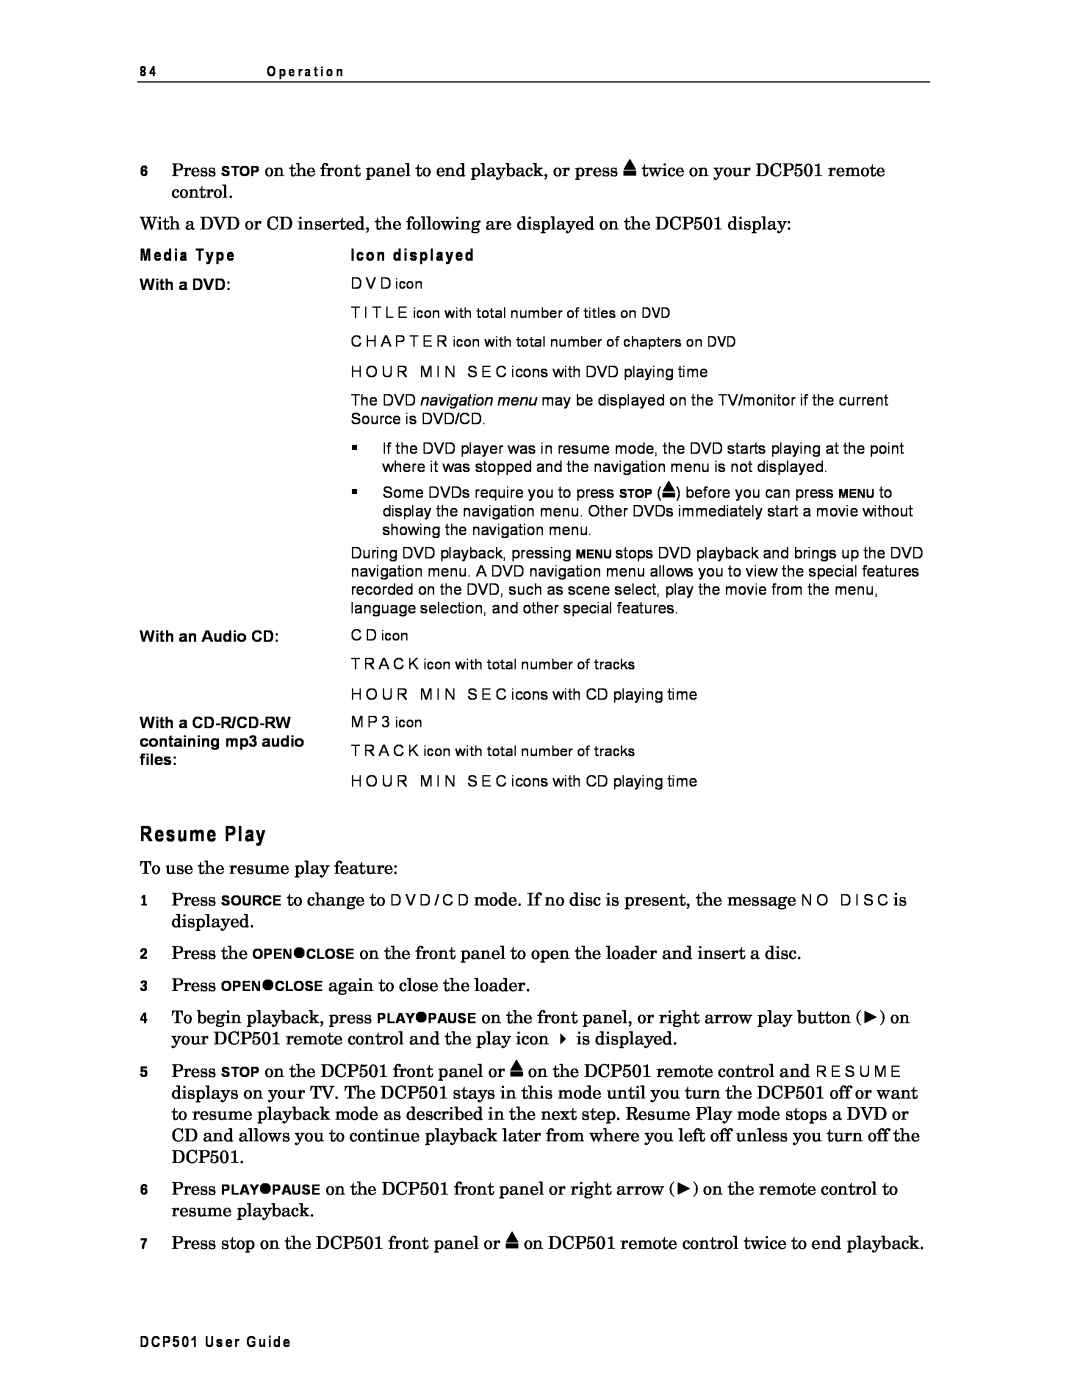 Motorola DCP501 manual Resume Play, Media Type, Icon displayed 